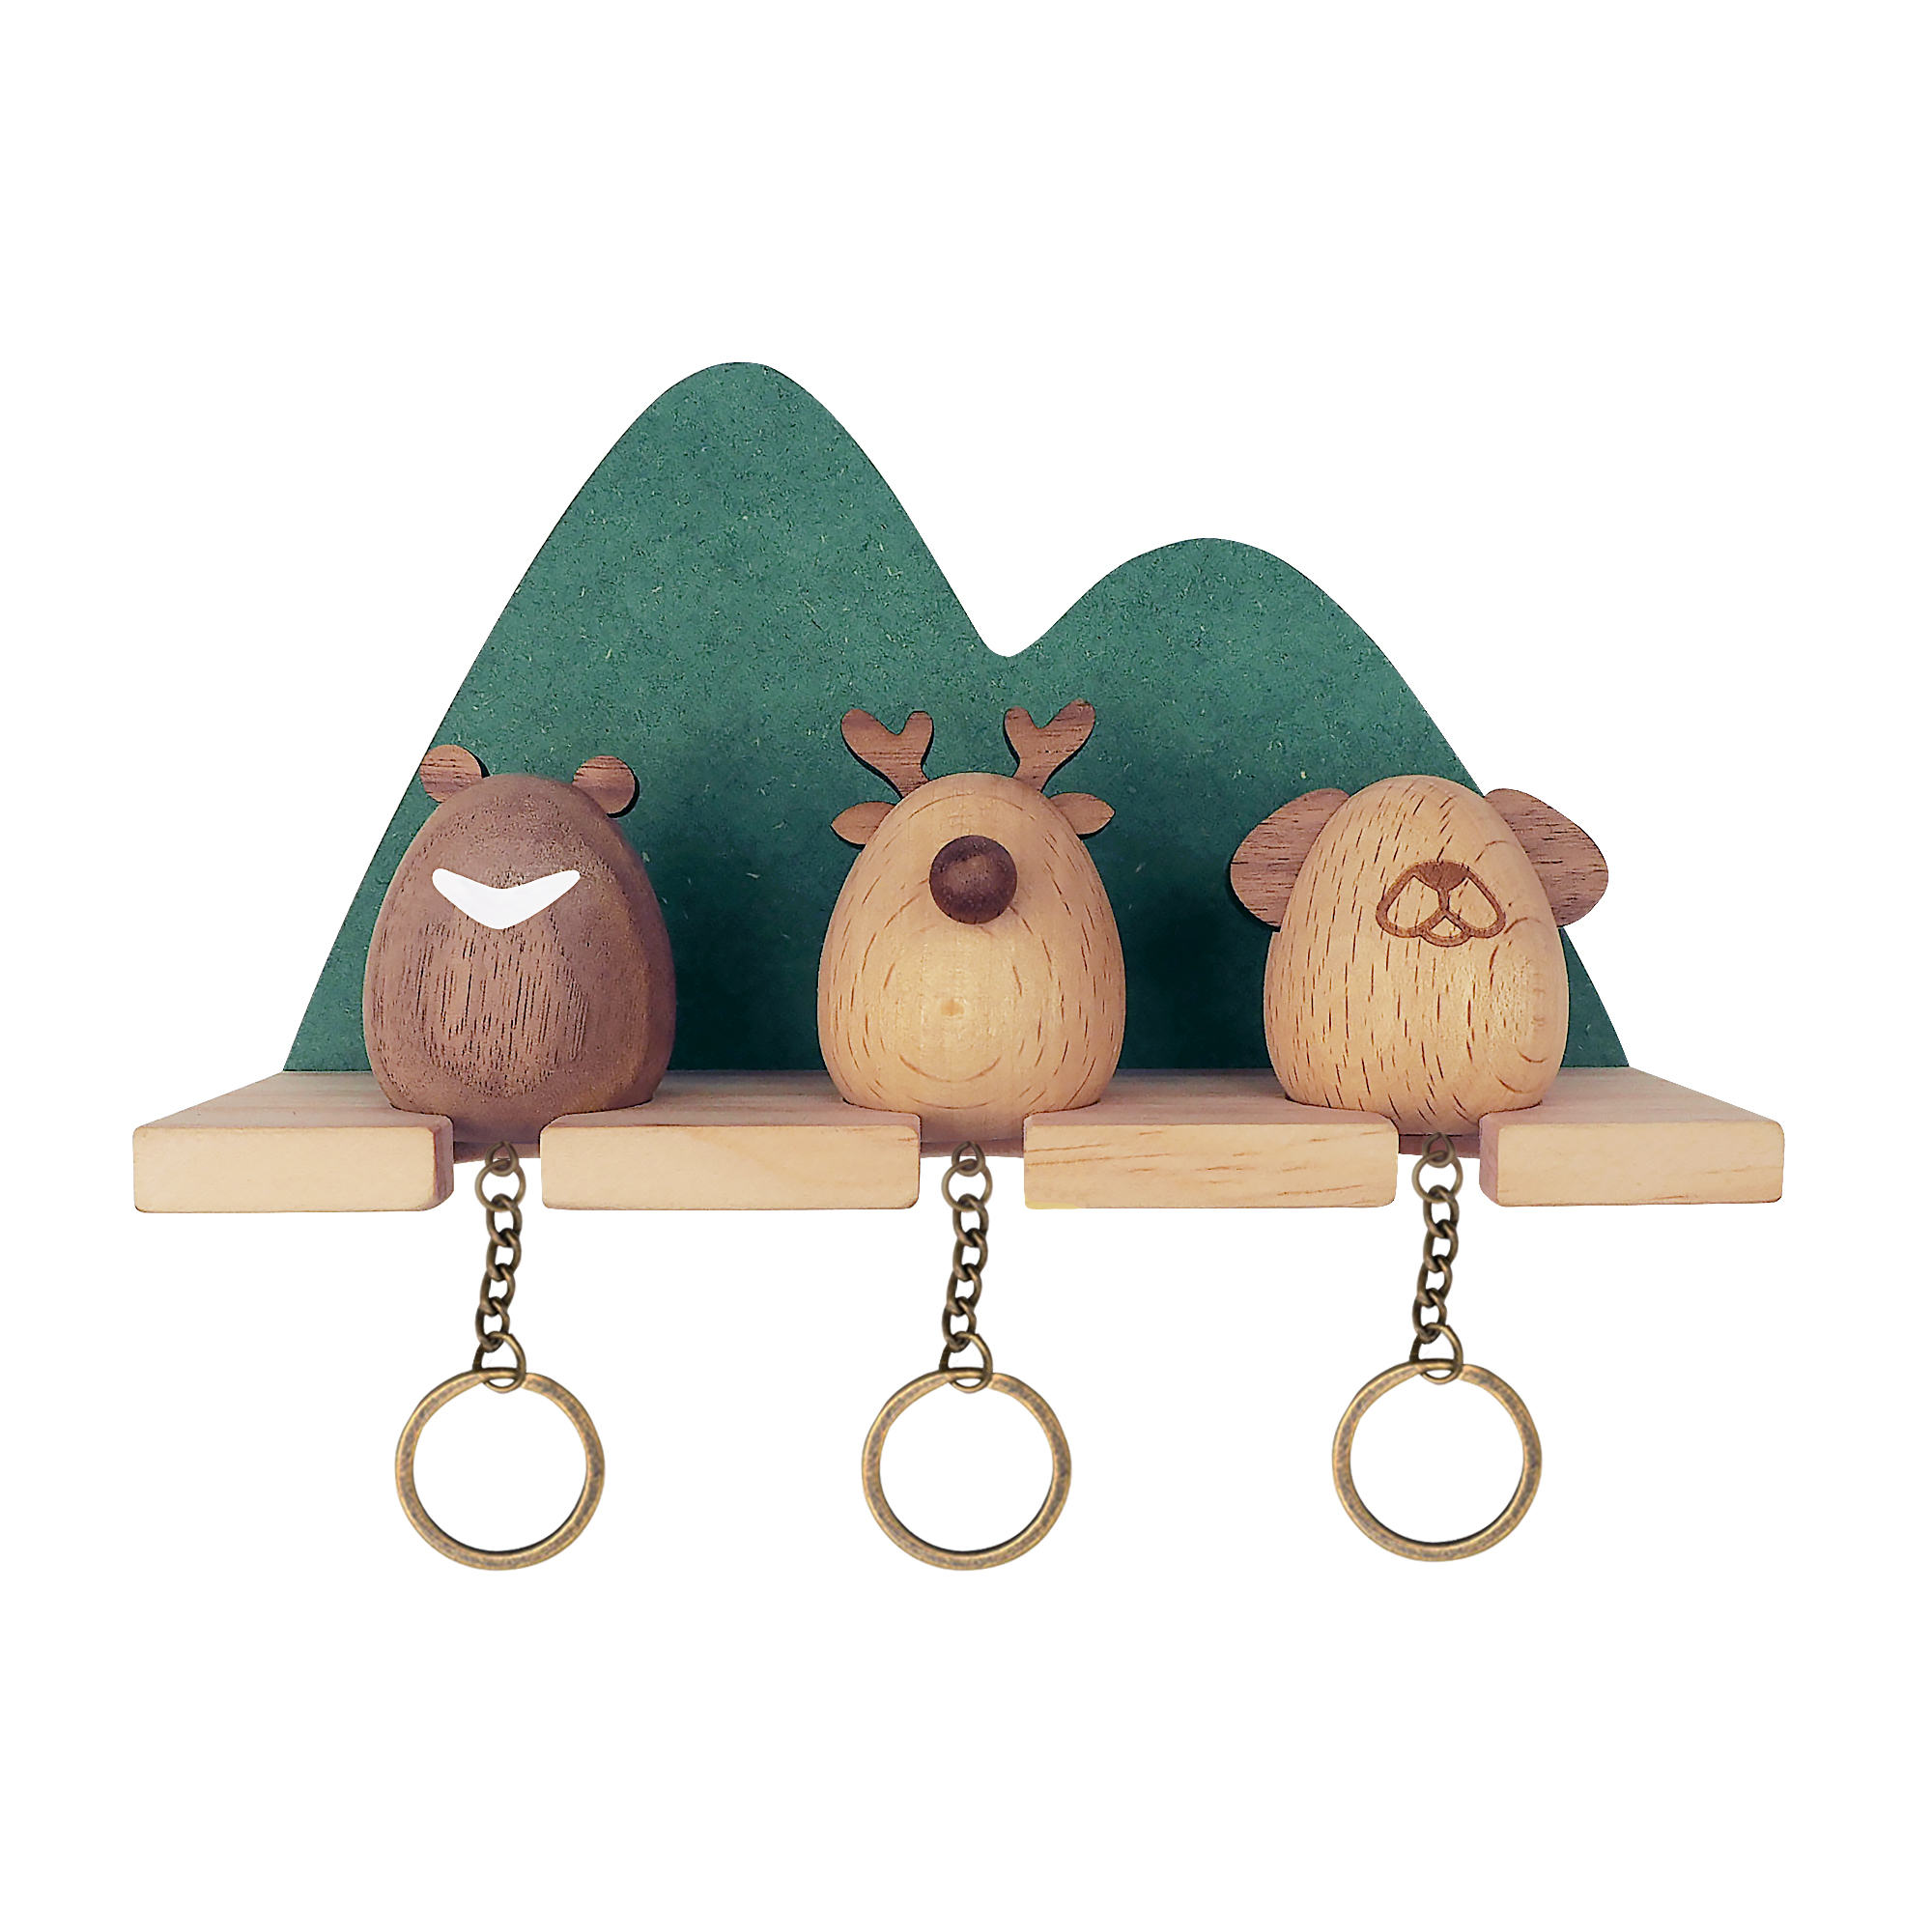 三隻動物分別配戴鑰匙，當你回家時將它歸回山林，同時象徵歸家的你。